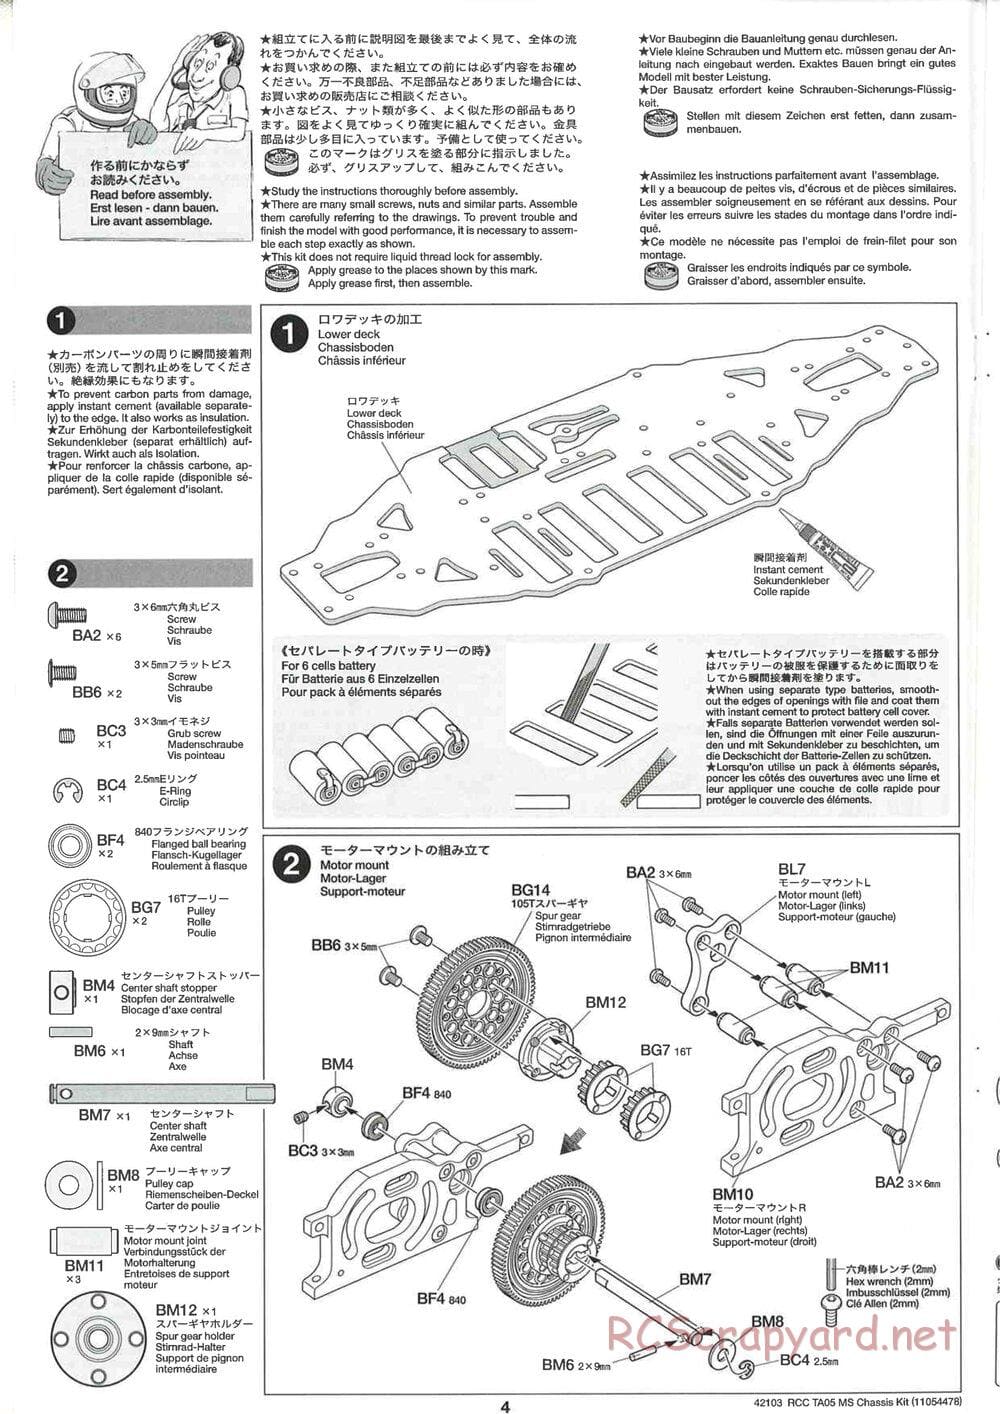 Tamiya - TA05 MS Chassis - Manual - Page 4